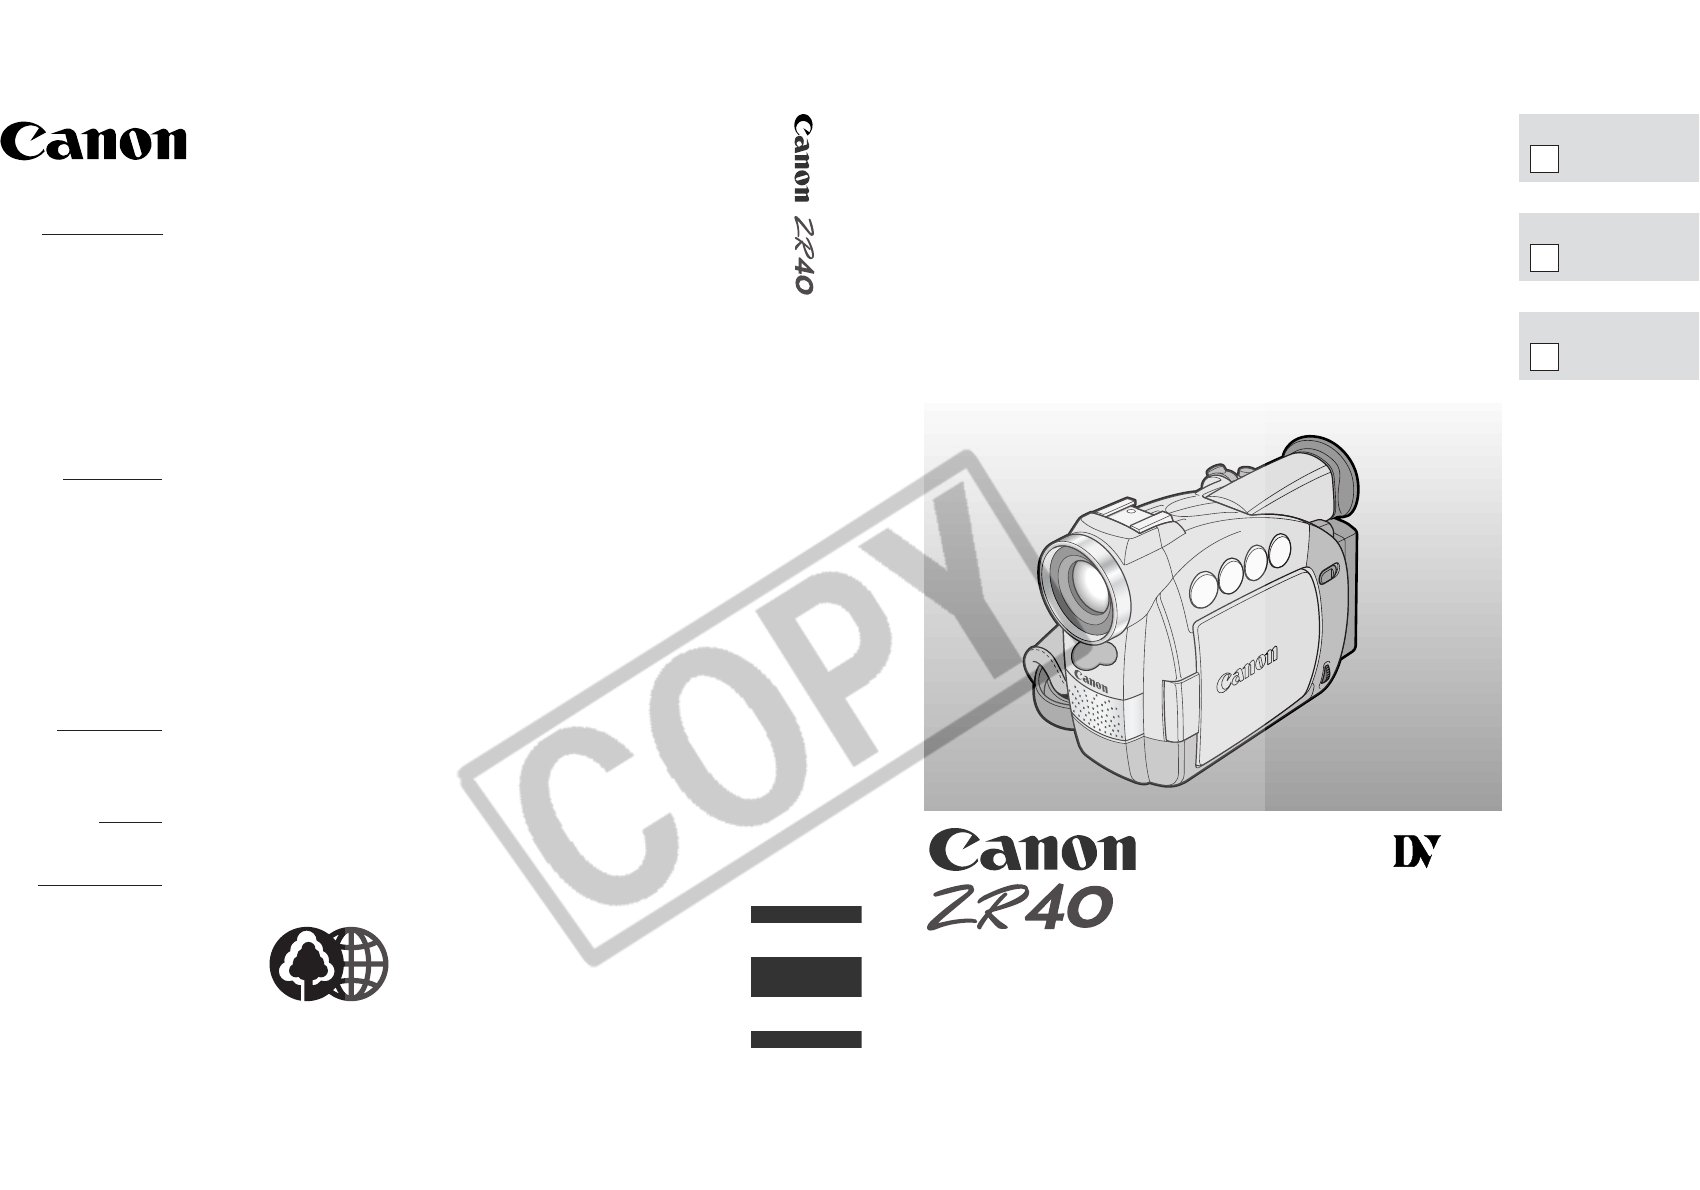 CANON ZR40 MANUAL PDF